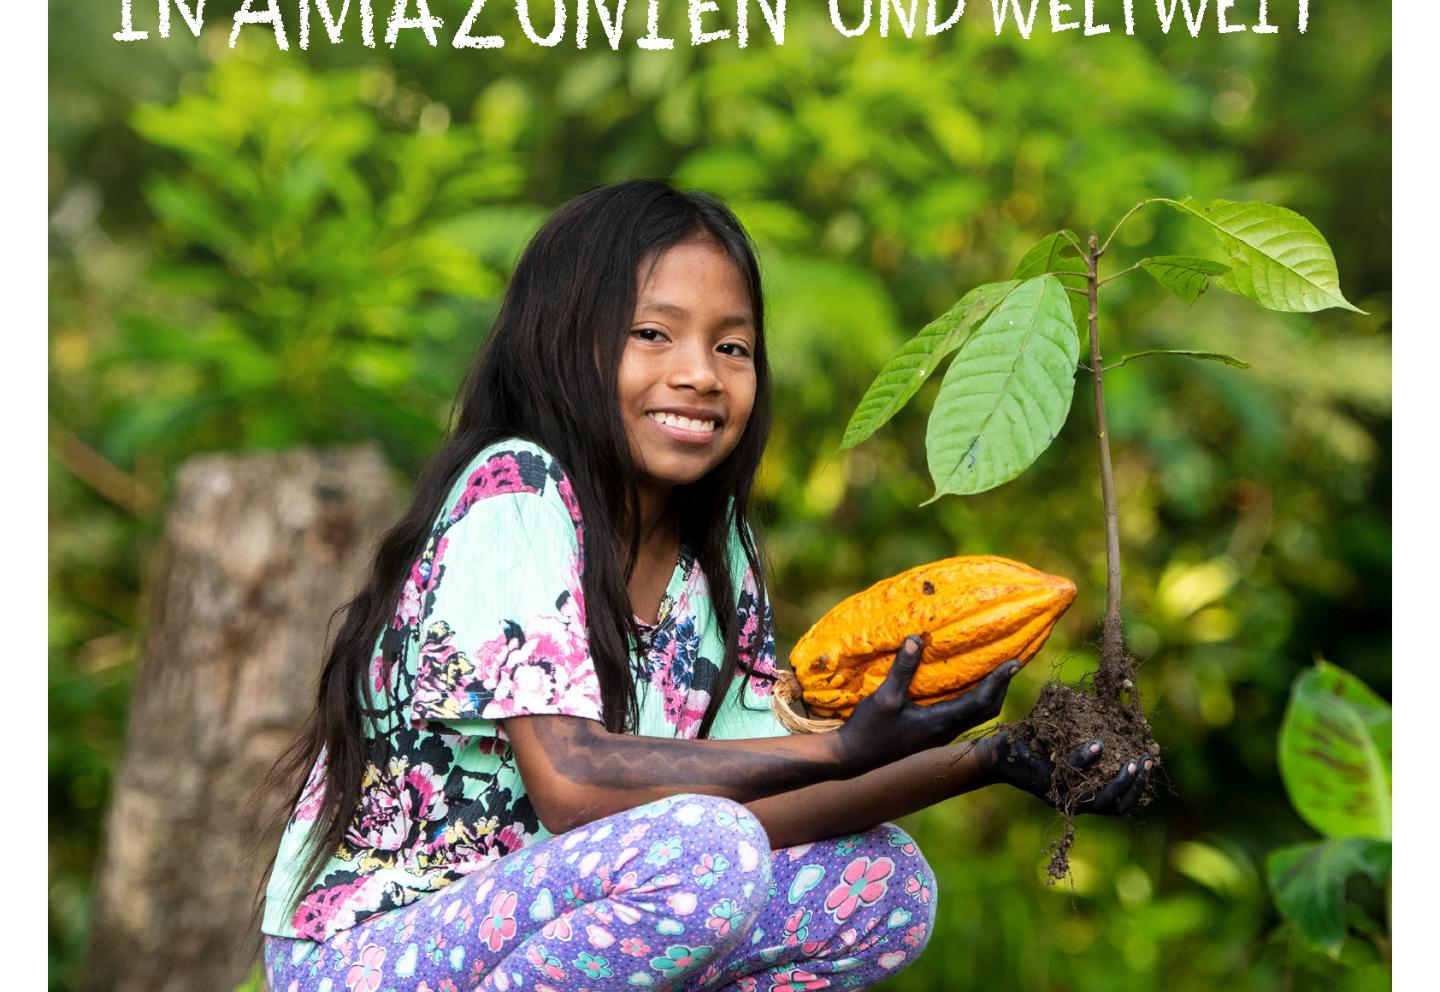 Gemeinsam für unsere Erde – in Amazonien und weltweit